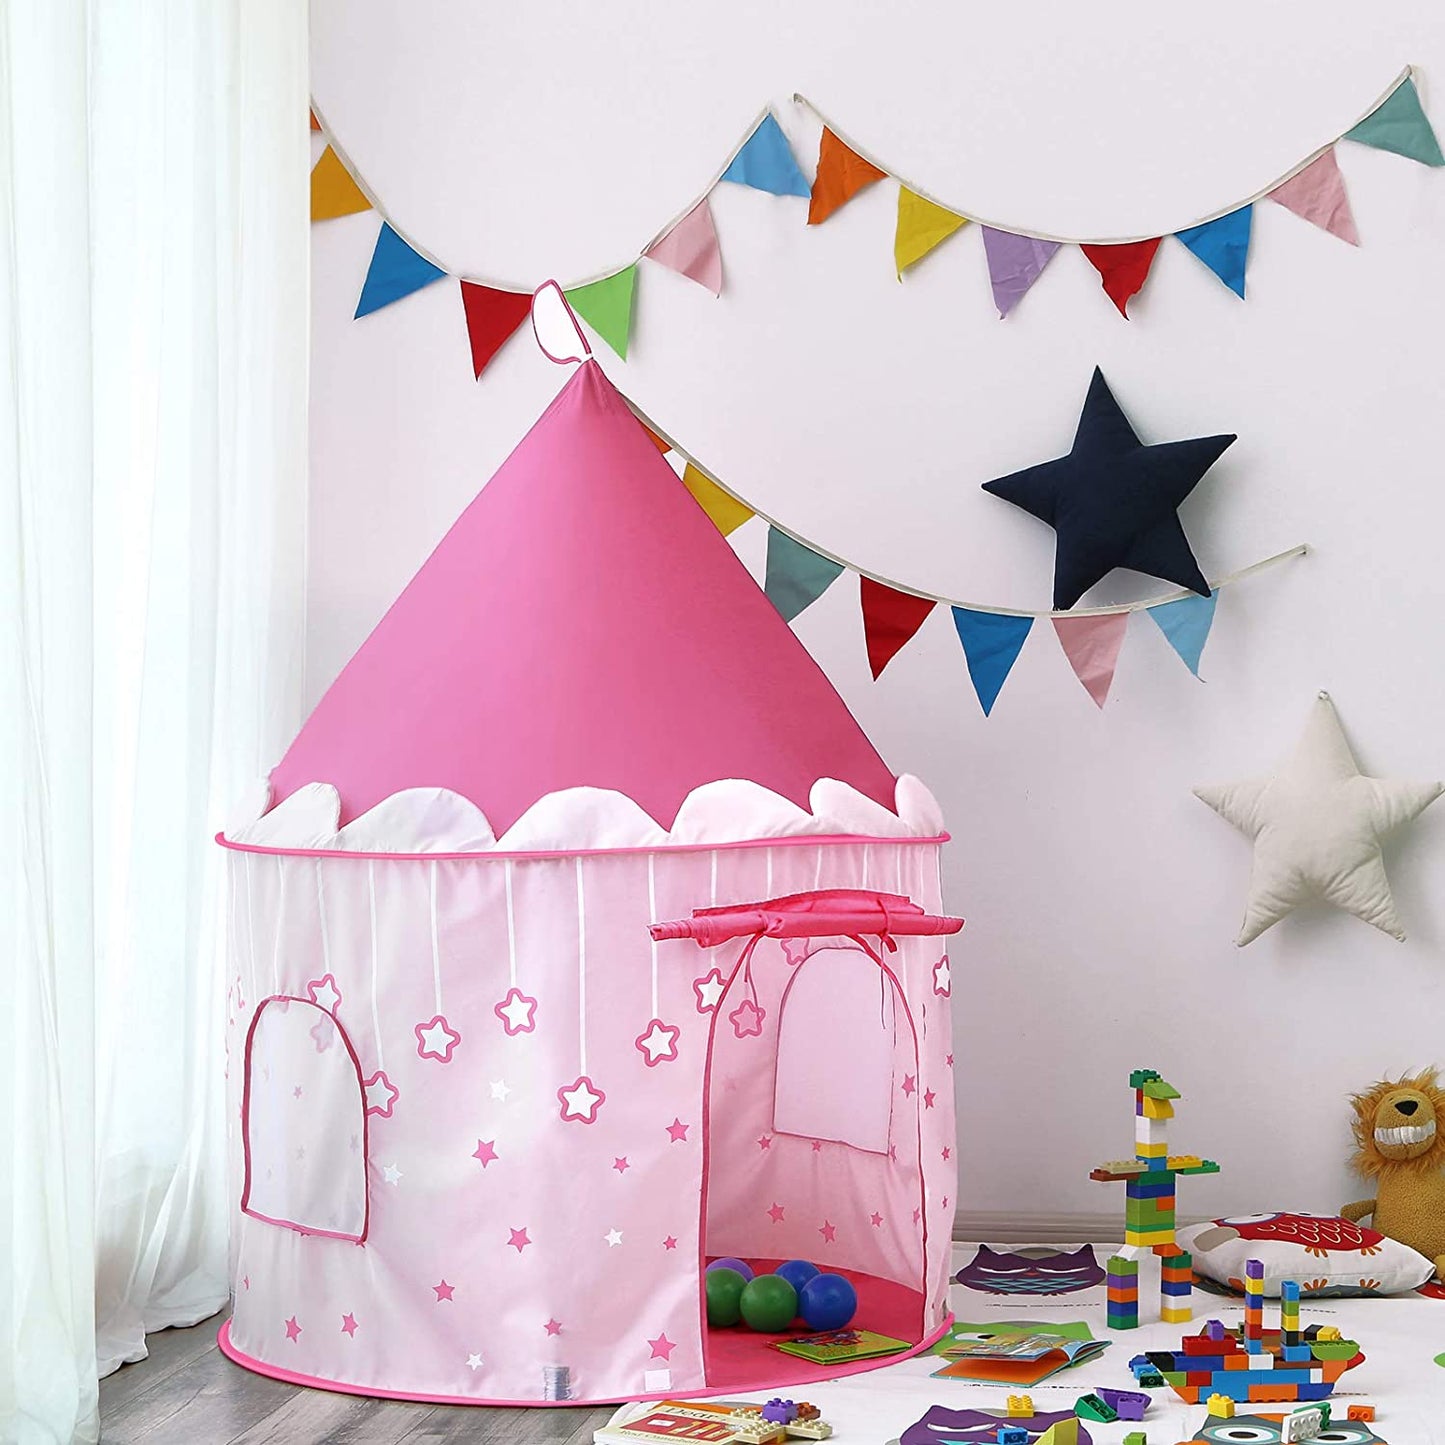 Tente de jeu Nancy's Princesses - Maison de jeu pour les tout-petits - Intérieur et extérieur - Tente de jeu pop-up